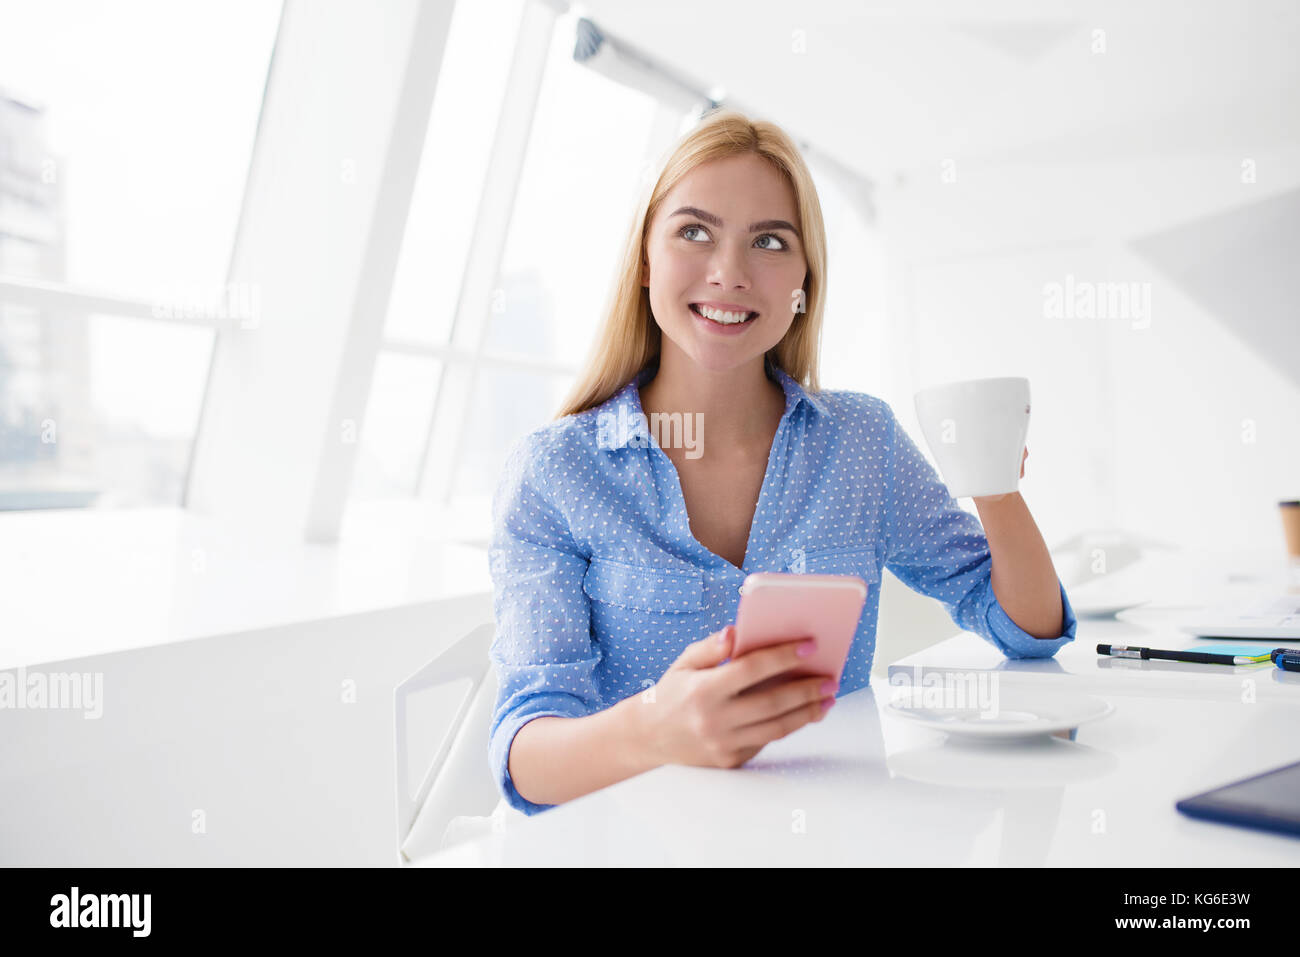 Gerne Frau nimmt eine Kaffeepause während ihrer Arbeit Stockfoto